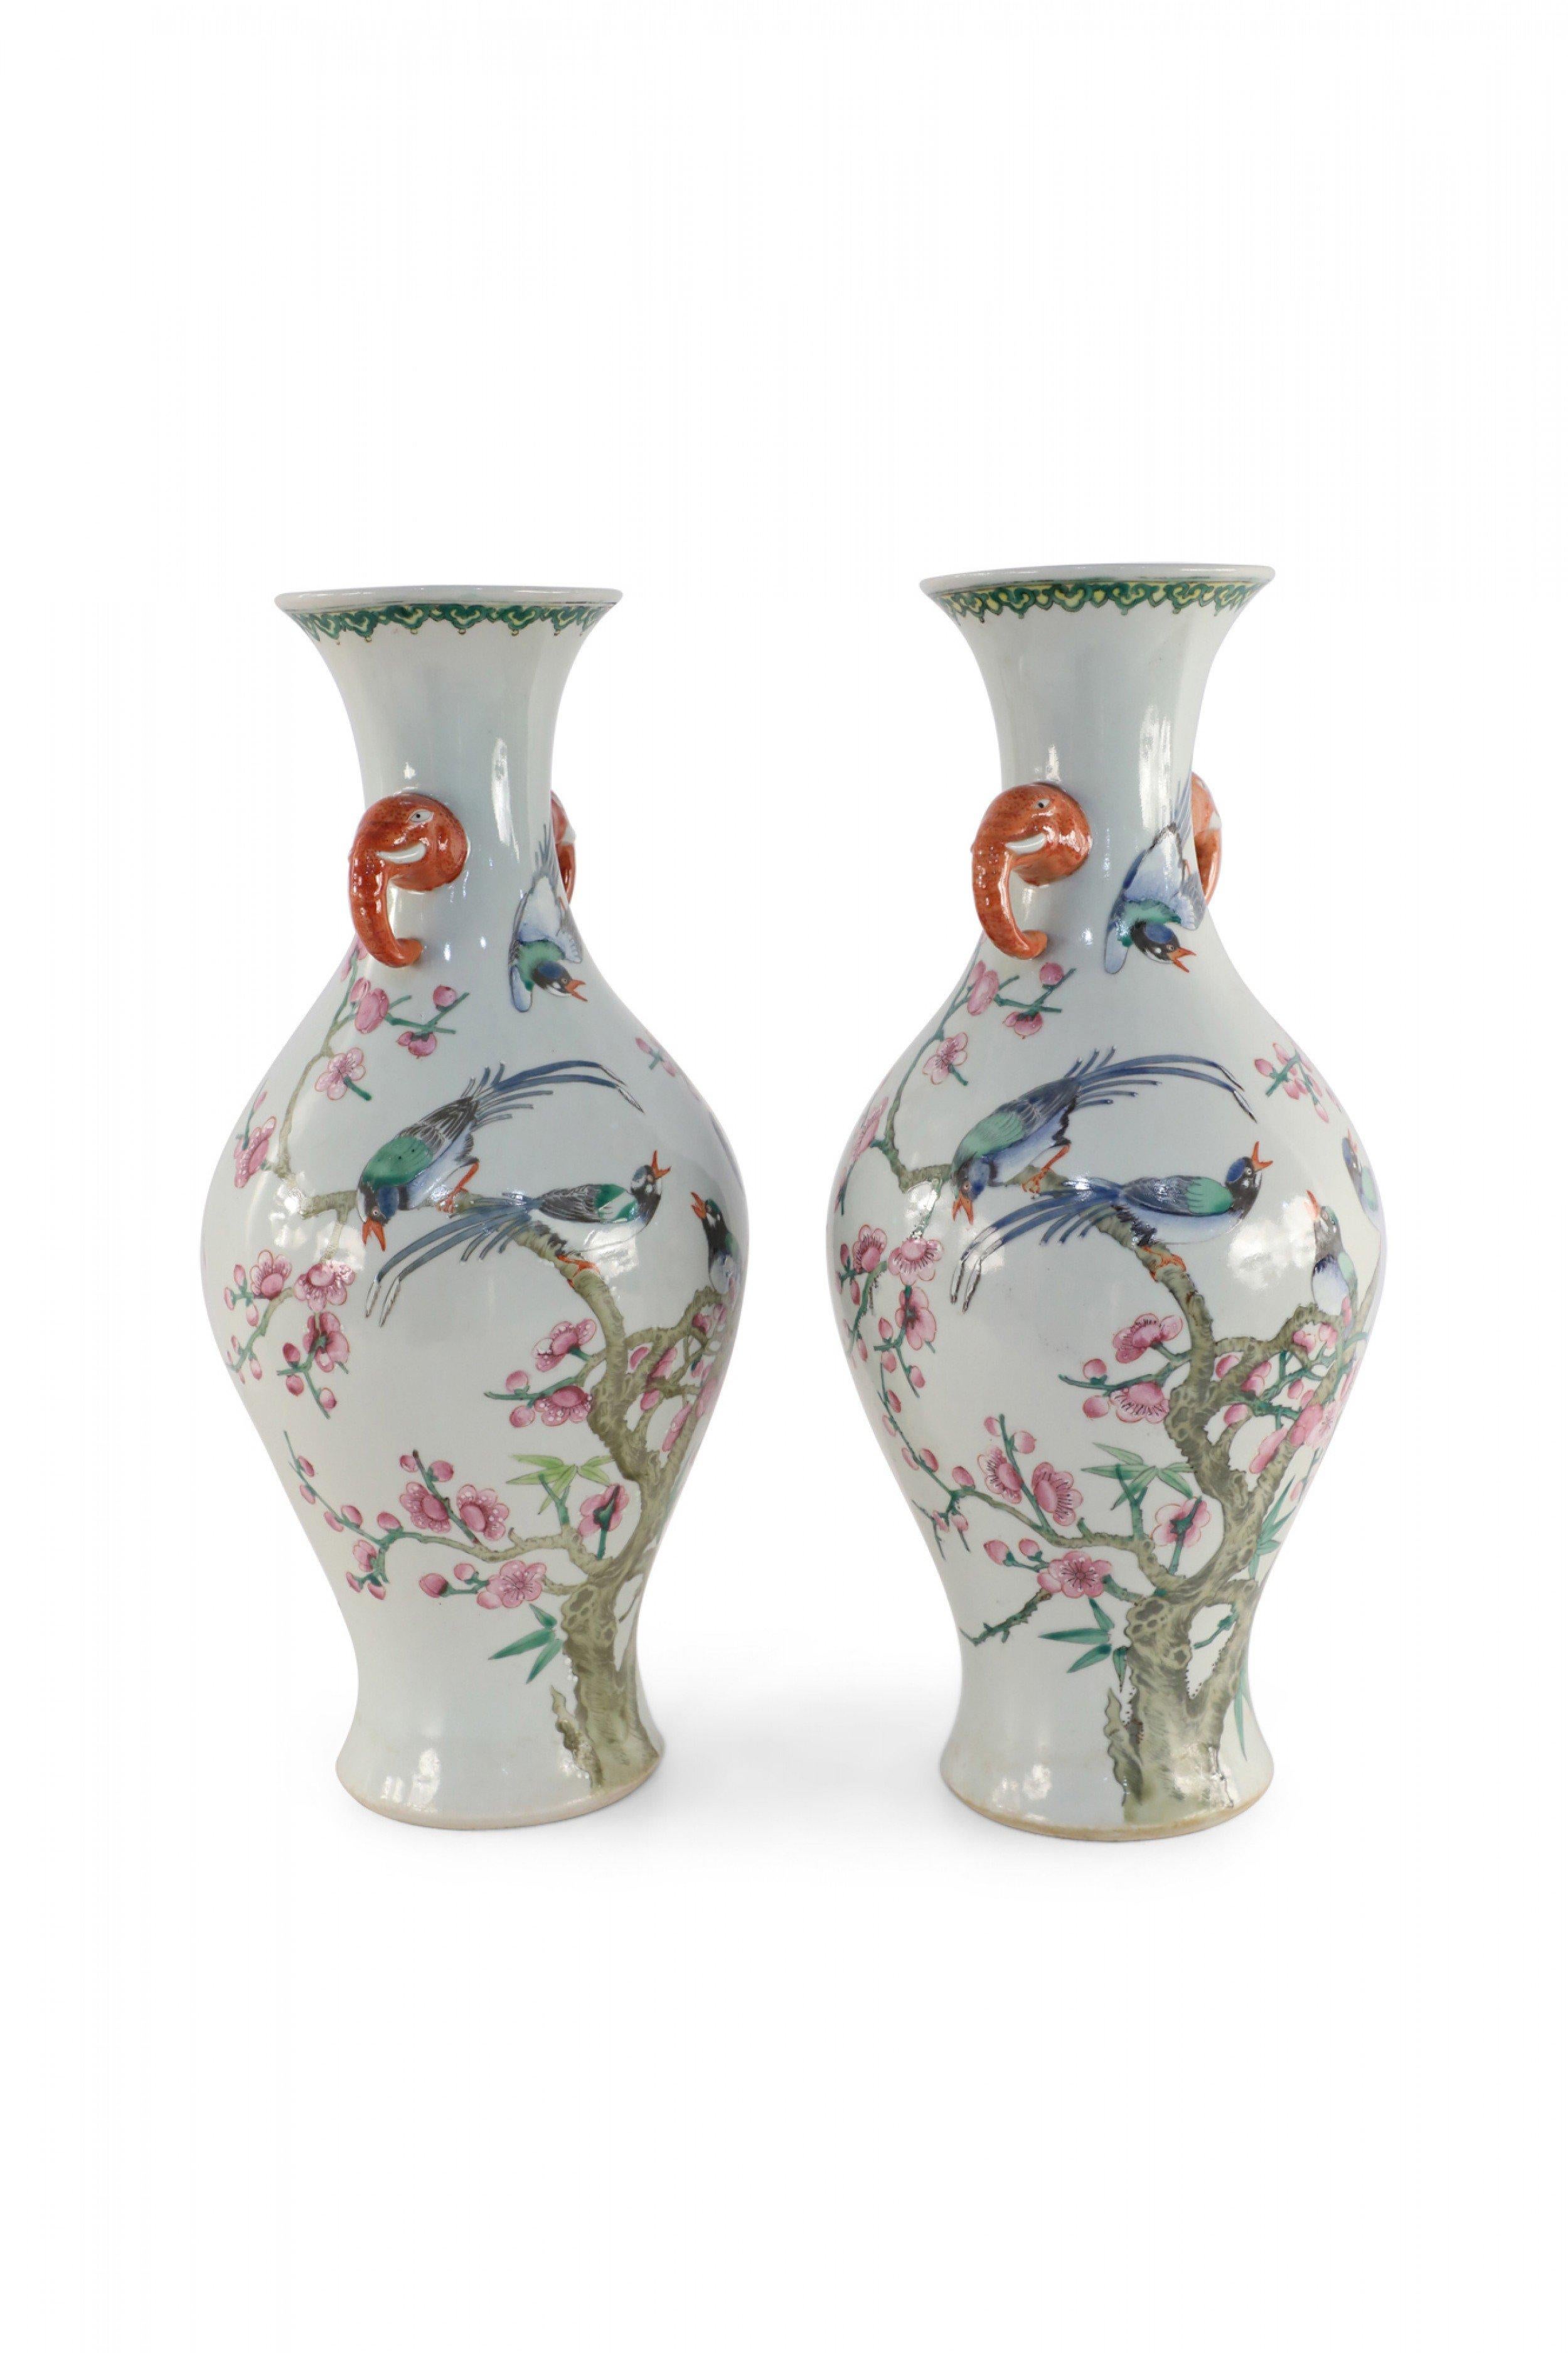 Paire de vases chinois en porcelaine blanc cassé en forme d'urne représentant des groupes d'oiseaux perchés sur des branches fleuries de cerisiers et un oiseau volant au-dessus, positionnés entre deux poignées orange en forme d'éléphant qui ornent